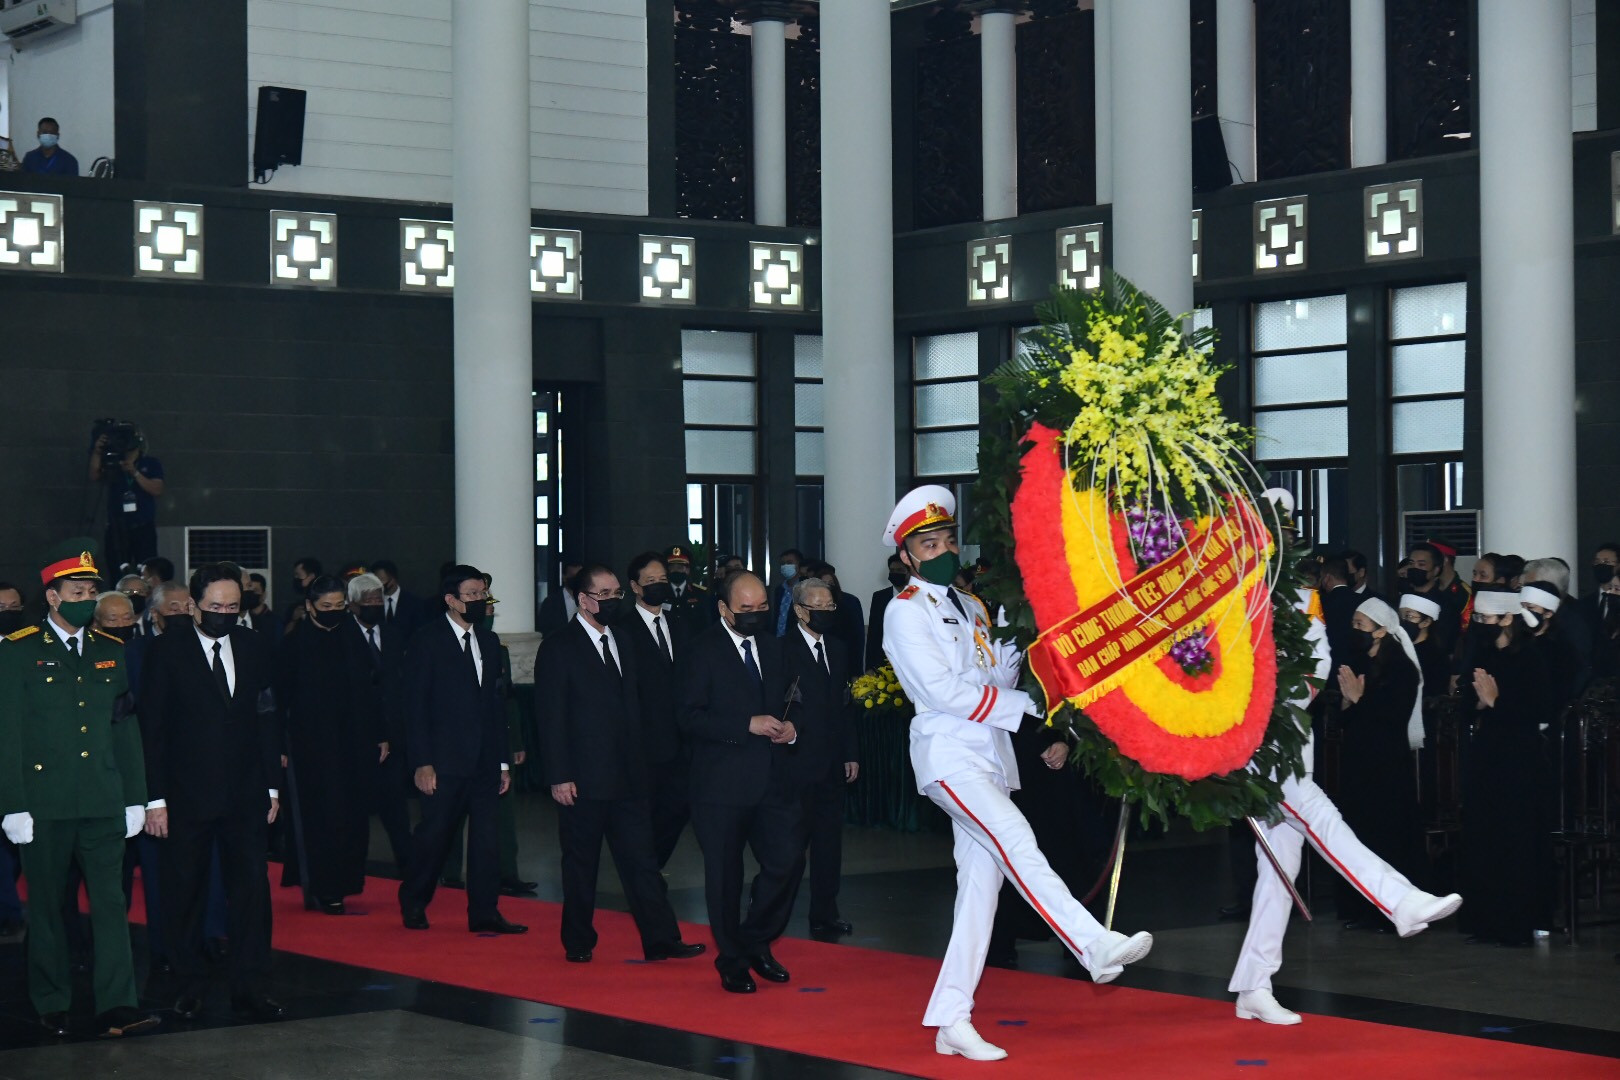 Đoàn đại biểu Đảng, Nhà nước, Chính phủ, Quốc hôi, MTTQ Việt Nam do Thủ tướng Nguyễn Xuân Phcus dẫn đầu vào viếng